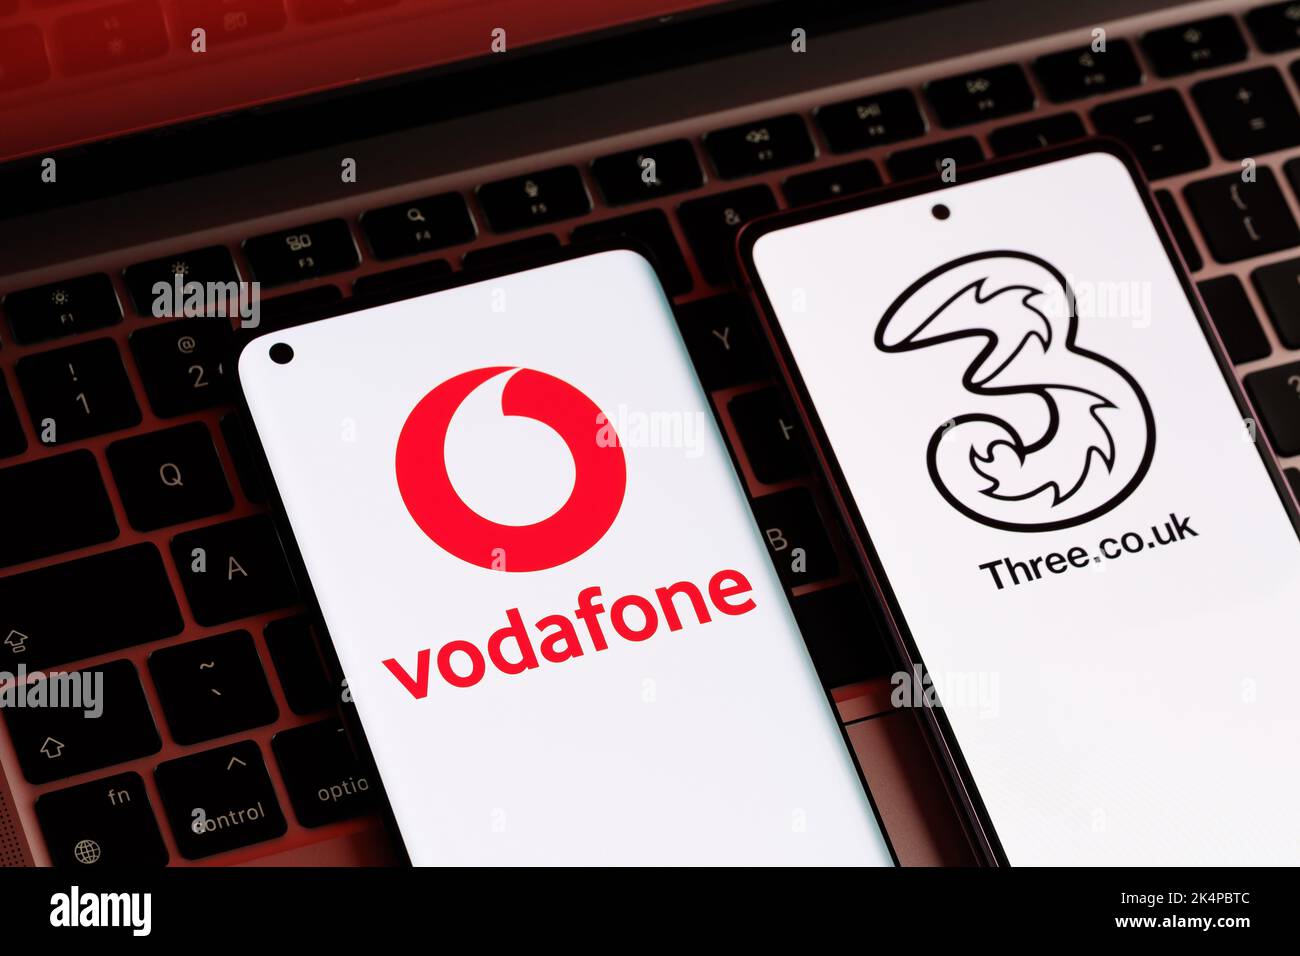 Vodafone und drei mögliche Fusionkonzepte. Die Smartphones werden zusammen mit den Logos der britischen Mobilfunkanbieter auf den Bildschirmen angezeigt. Stafford, Großbritannien, Oc Stockfoto